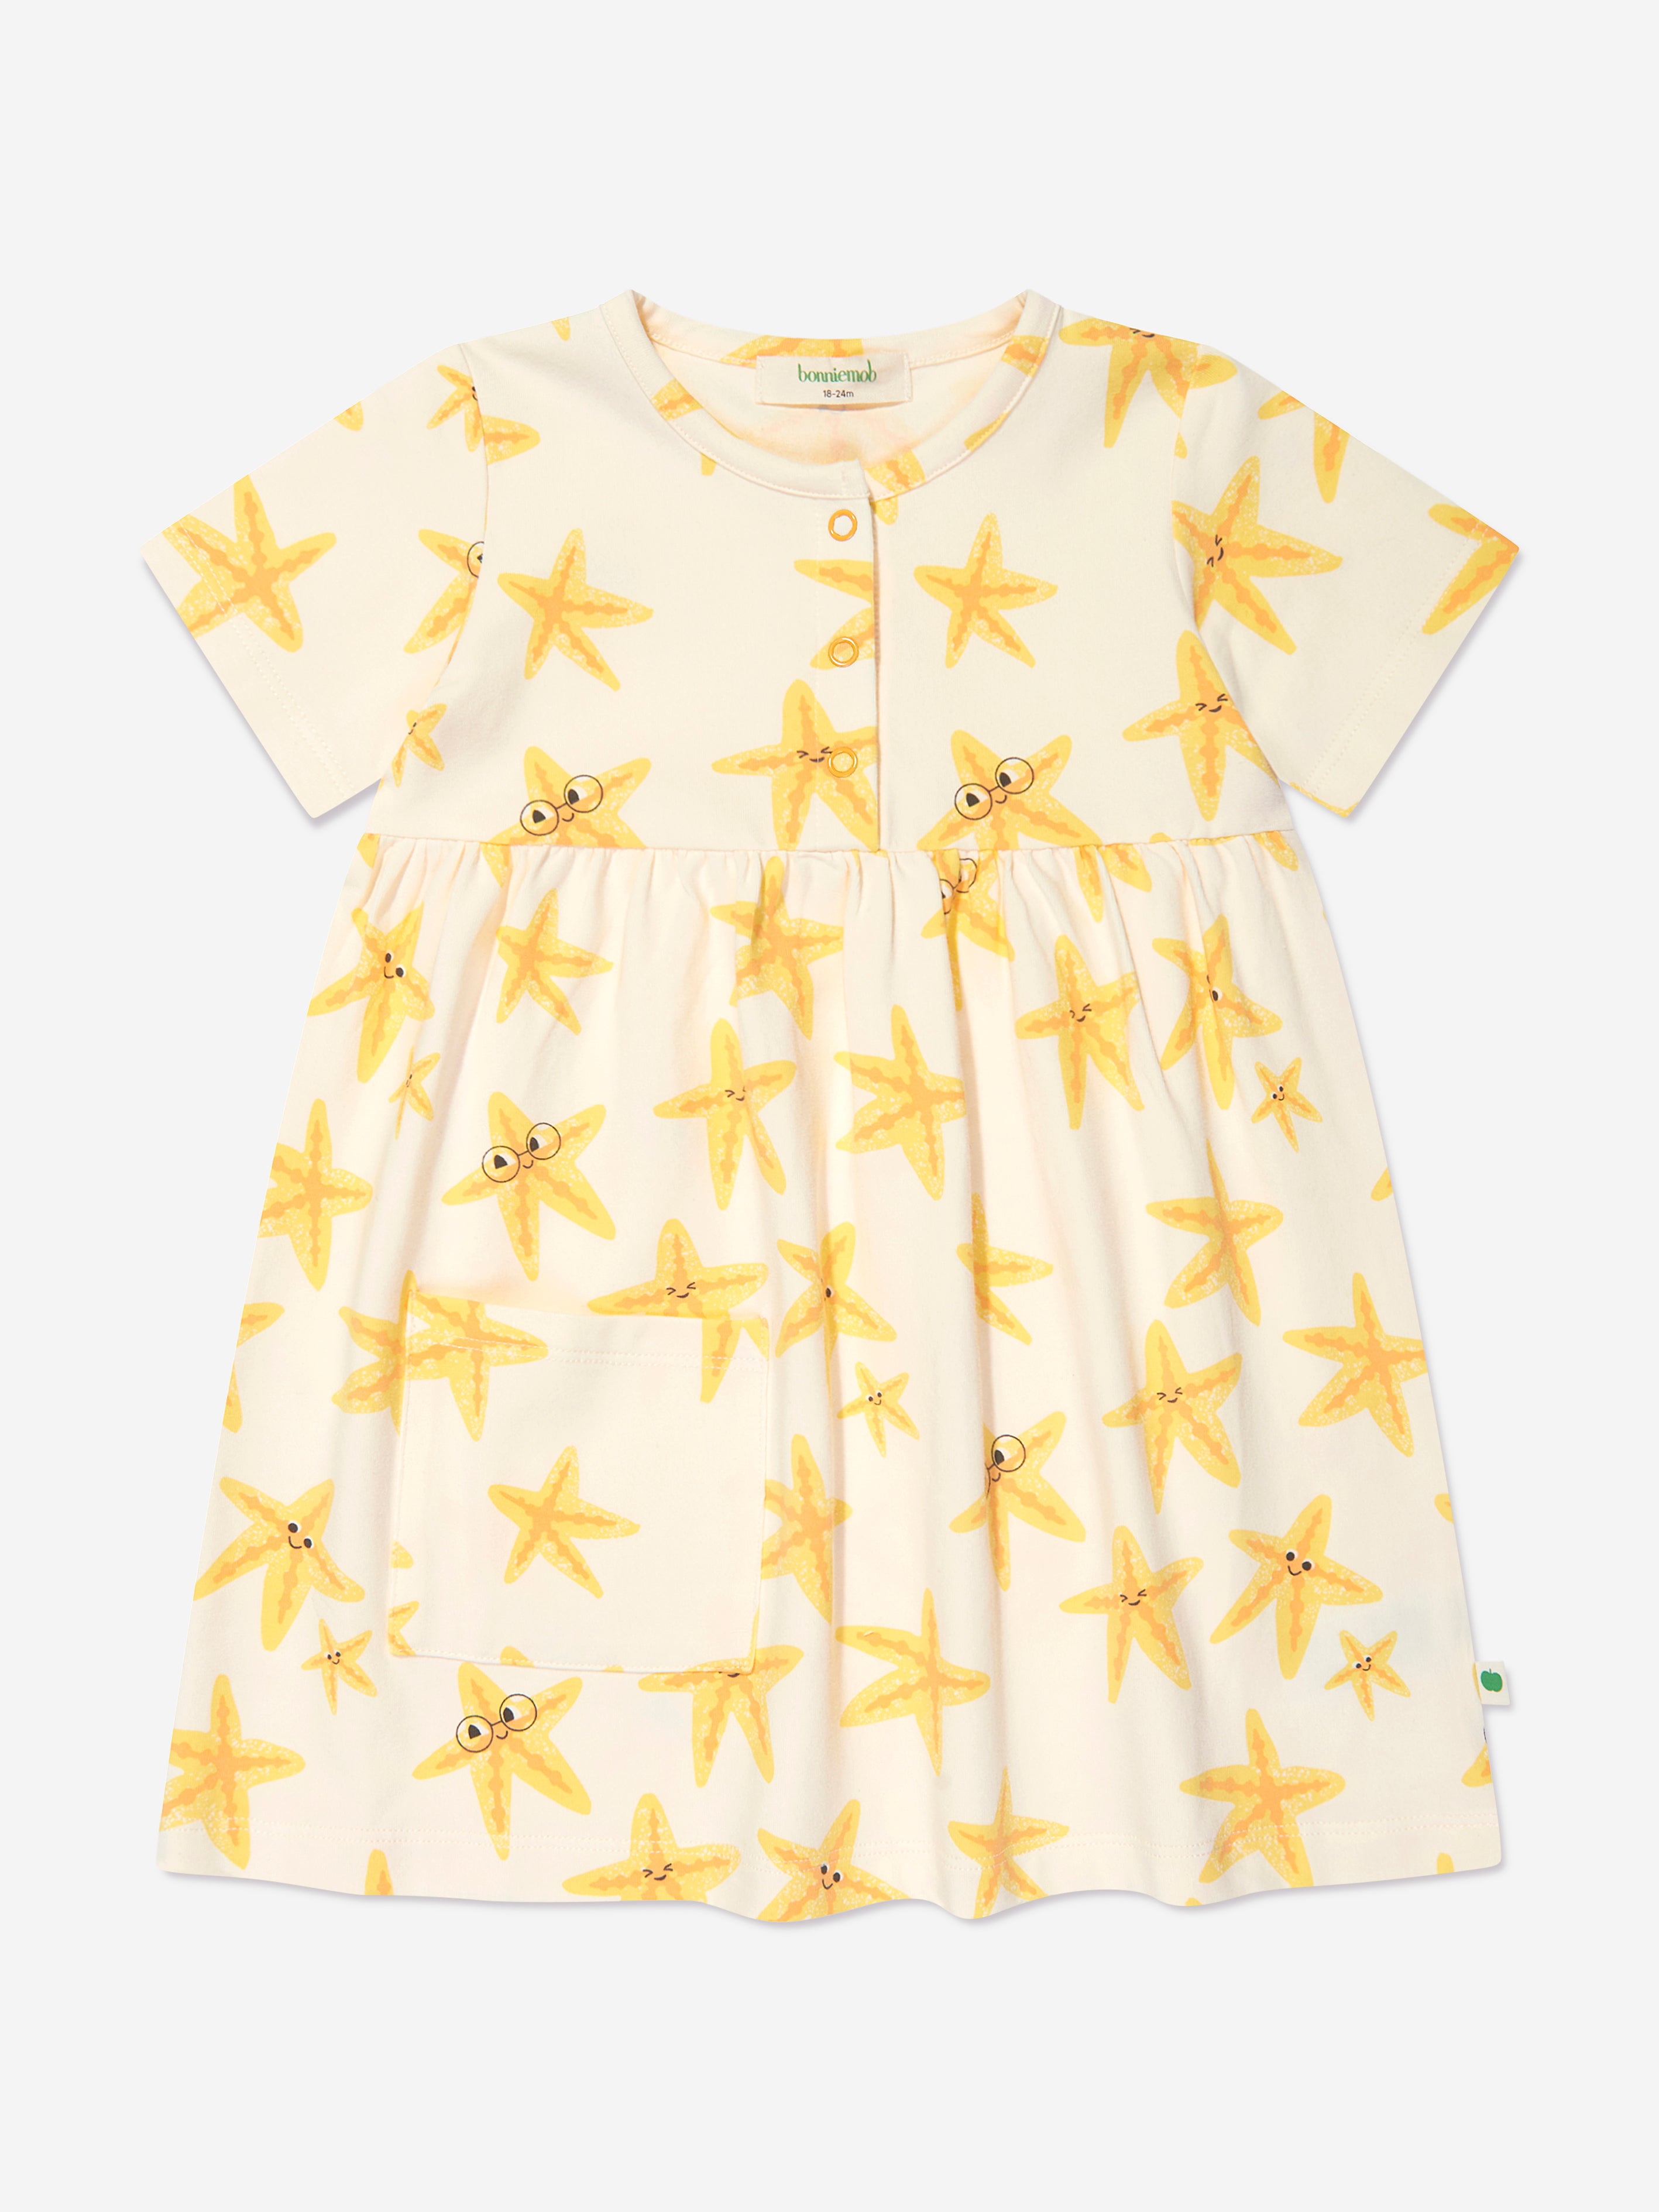 The Bonnie Mob Kids' Girls Cari Starfish Pocket Dress In Multi